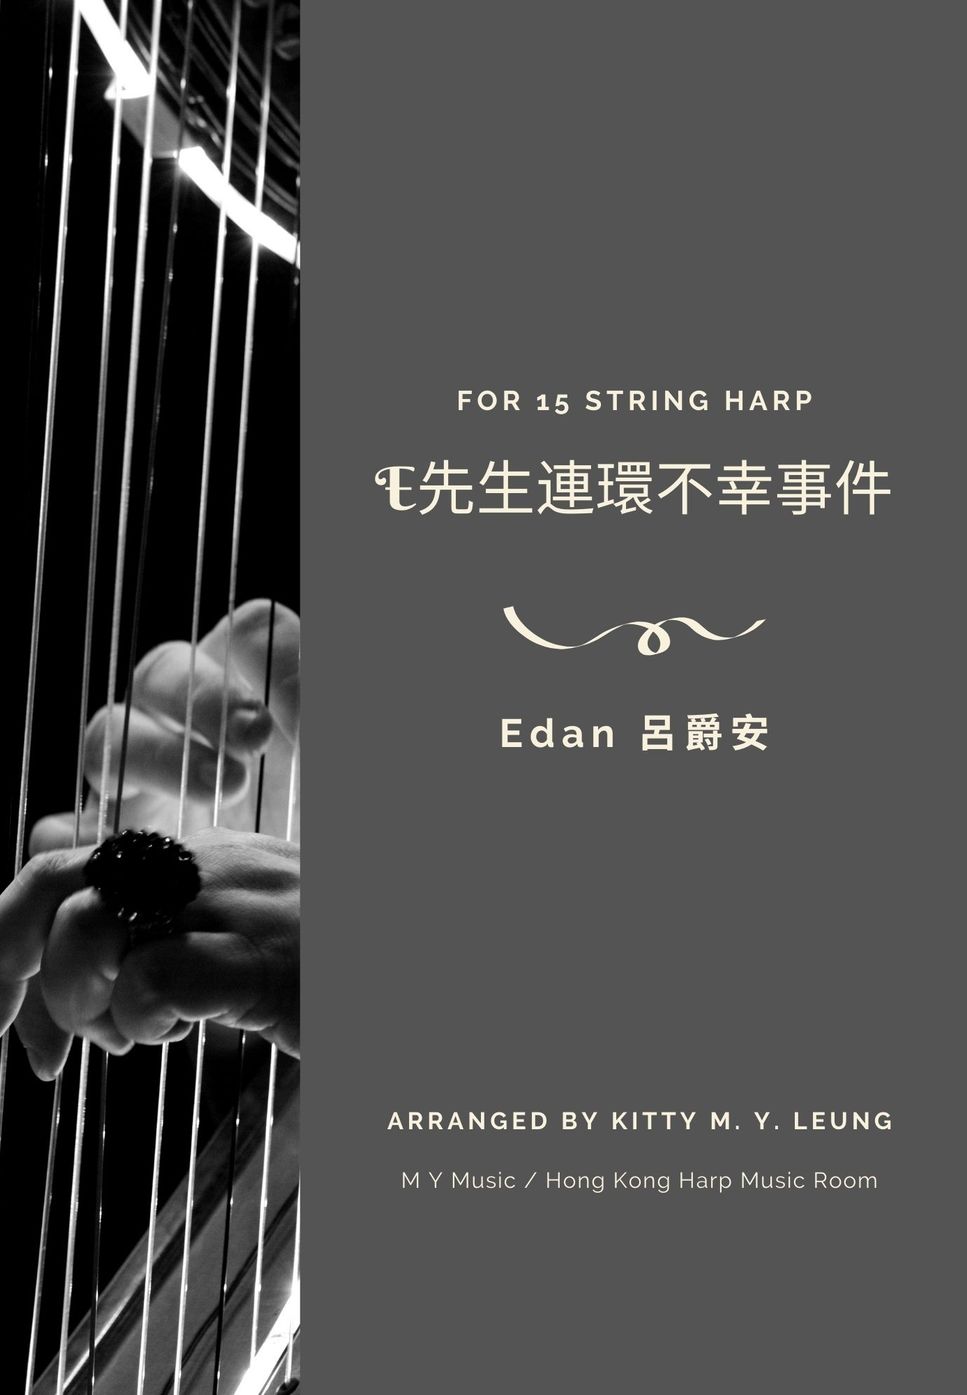 呂爵安 Edan Lui - E先生連環不幸事件 (15弦小豎琴) by Kitty M. Y. Leung